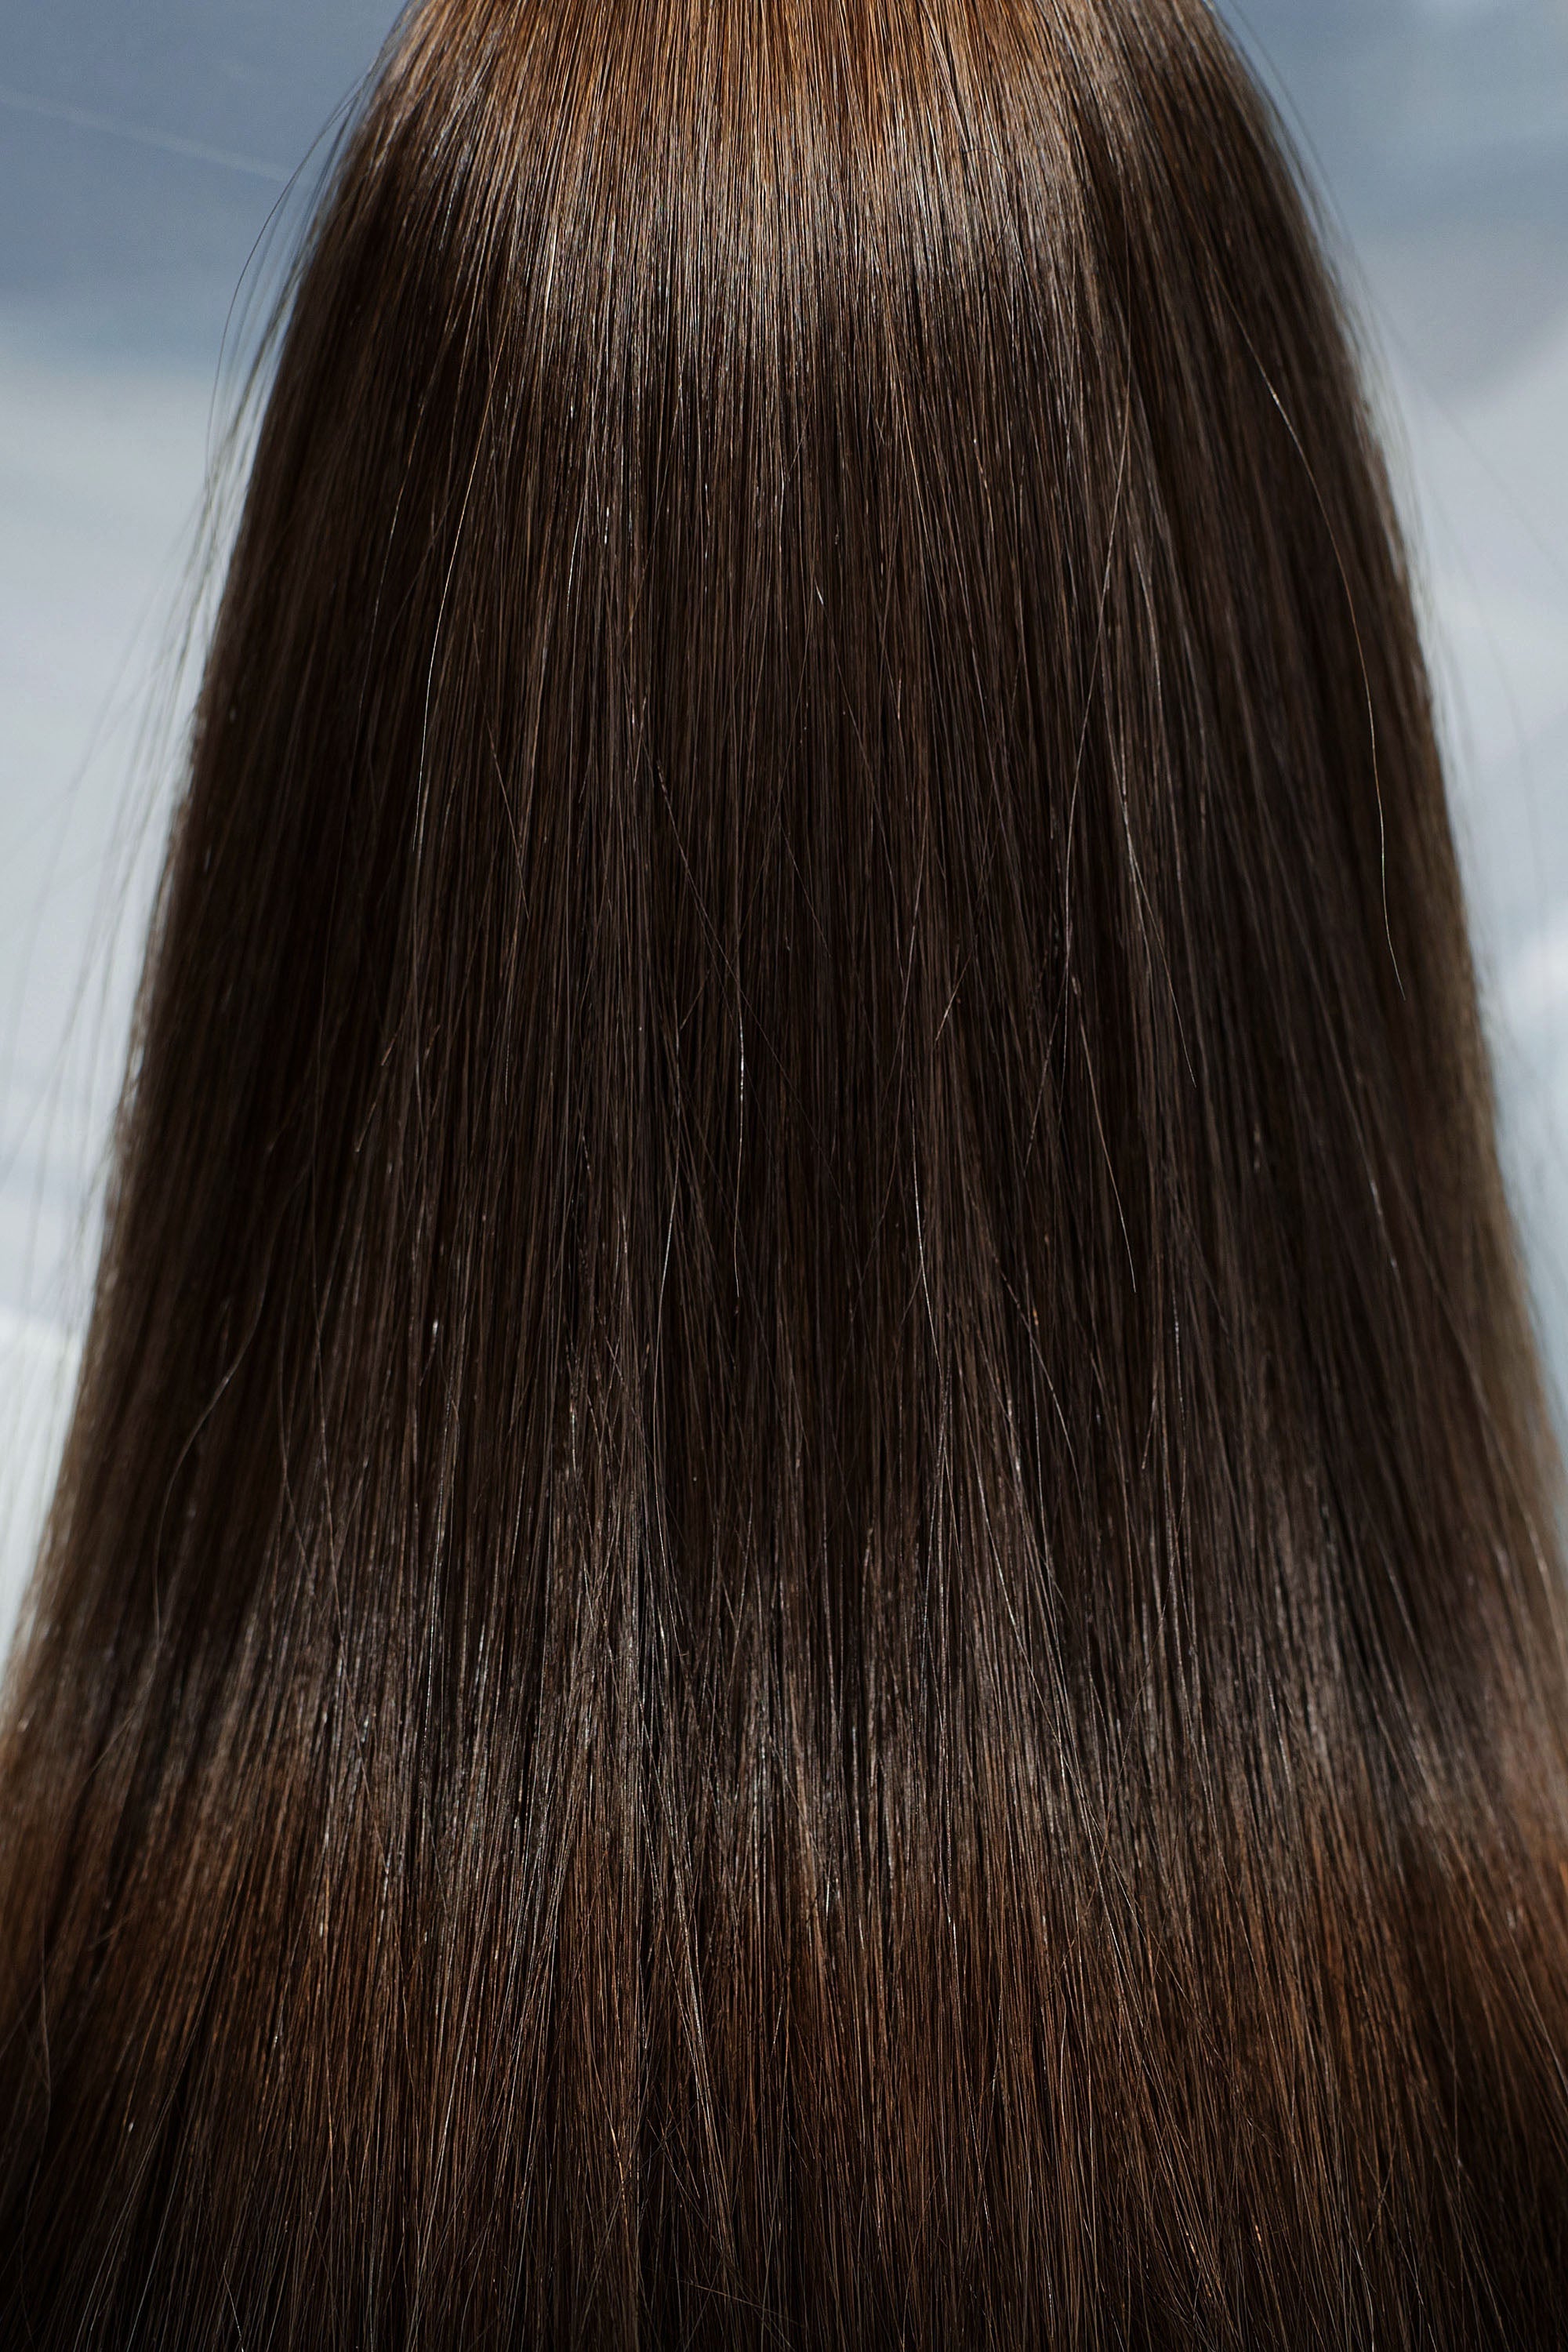 Behair professional Bulk hair "Premium" 22" (55cm) Natural Straight Light Brown #4 - 25g hair extensions